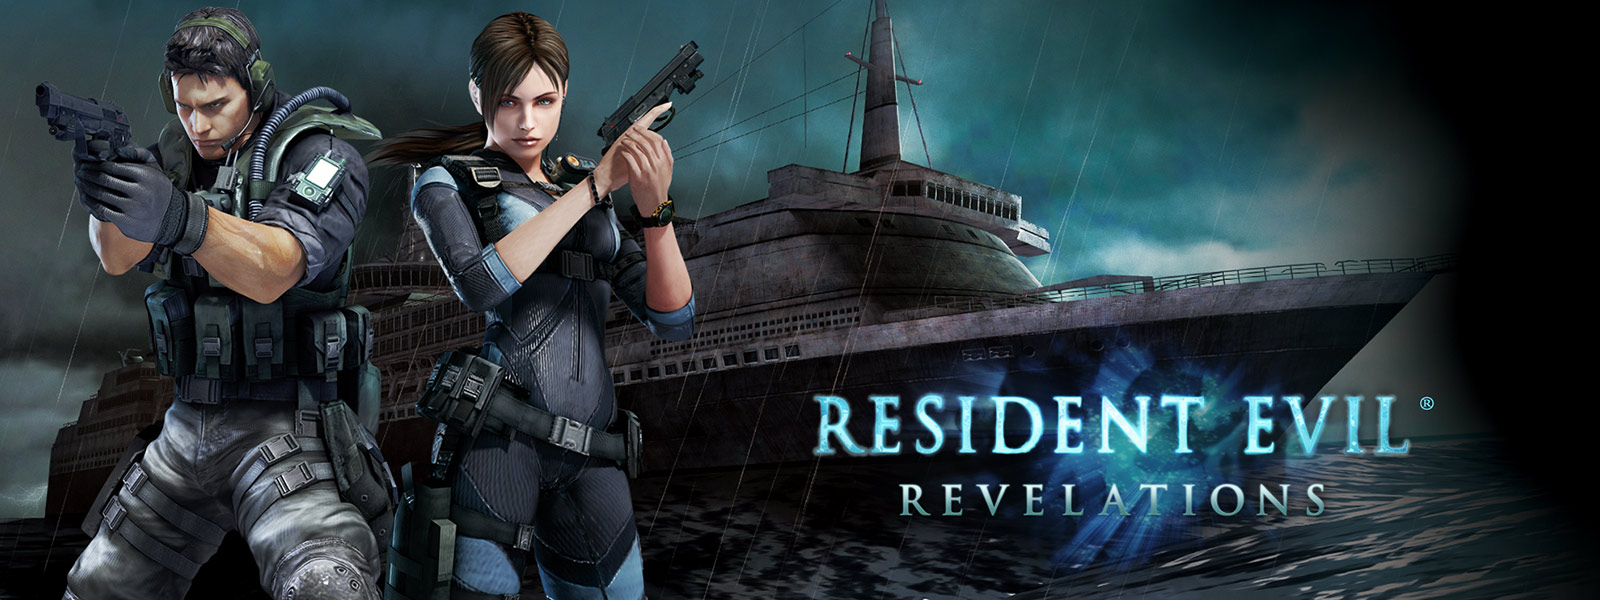 Resident Evil Revelations, deux personnages tenant des pistolets devant un bateau de croisière délabré